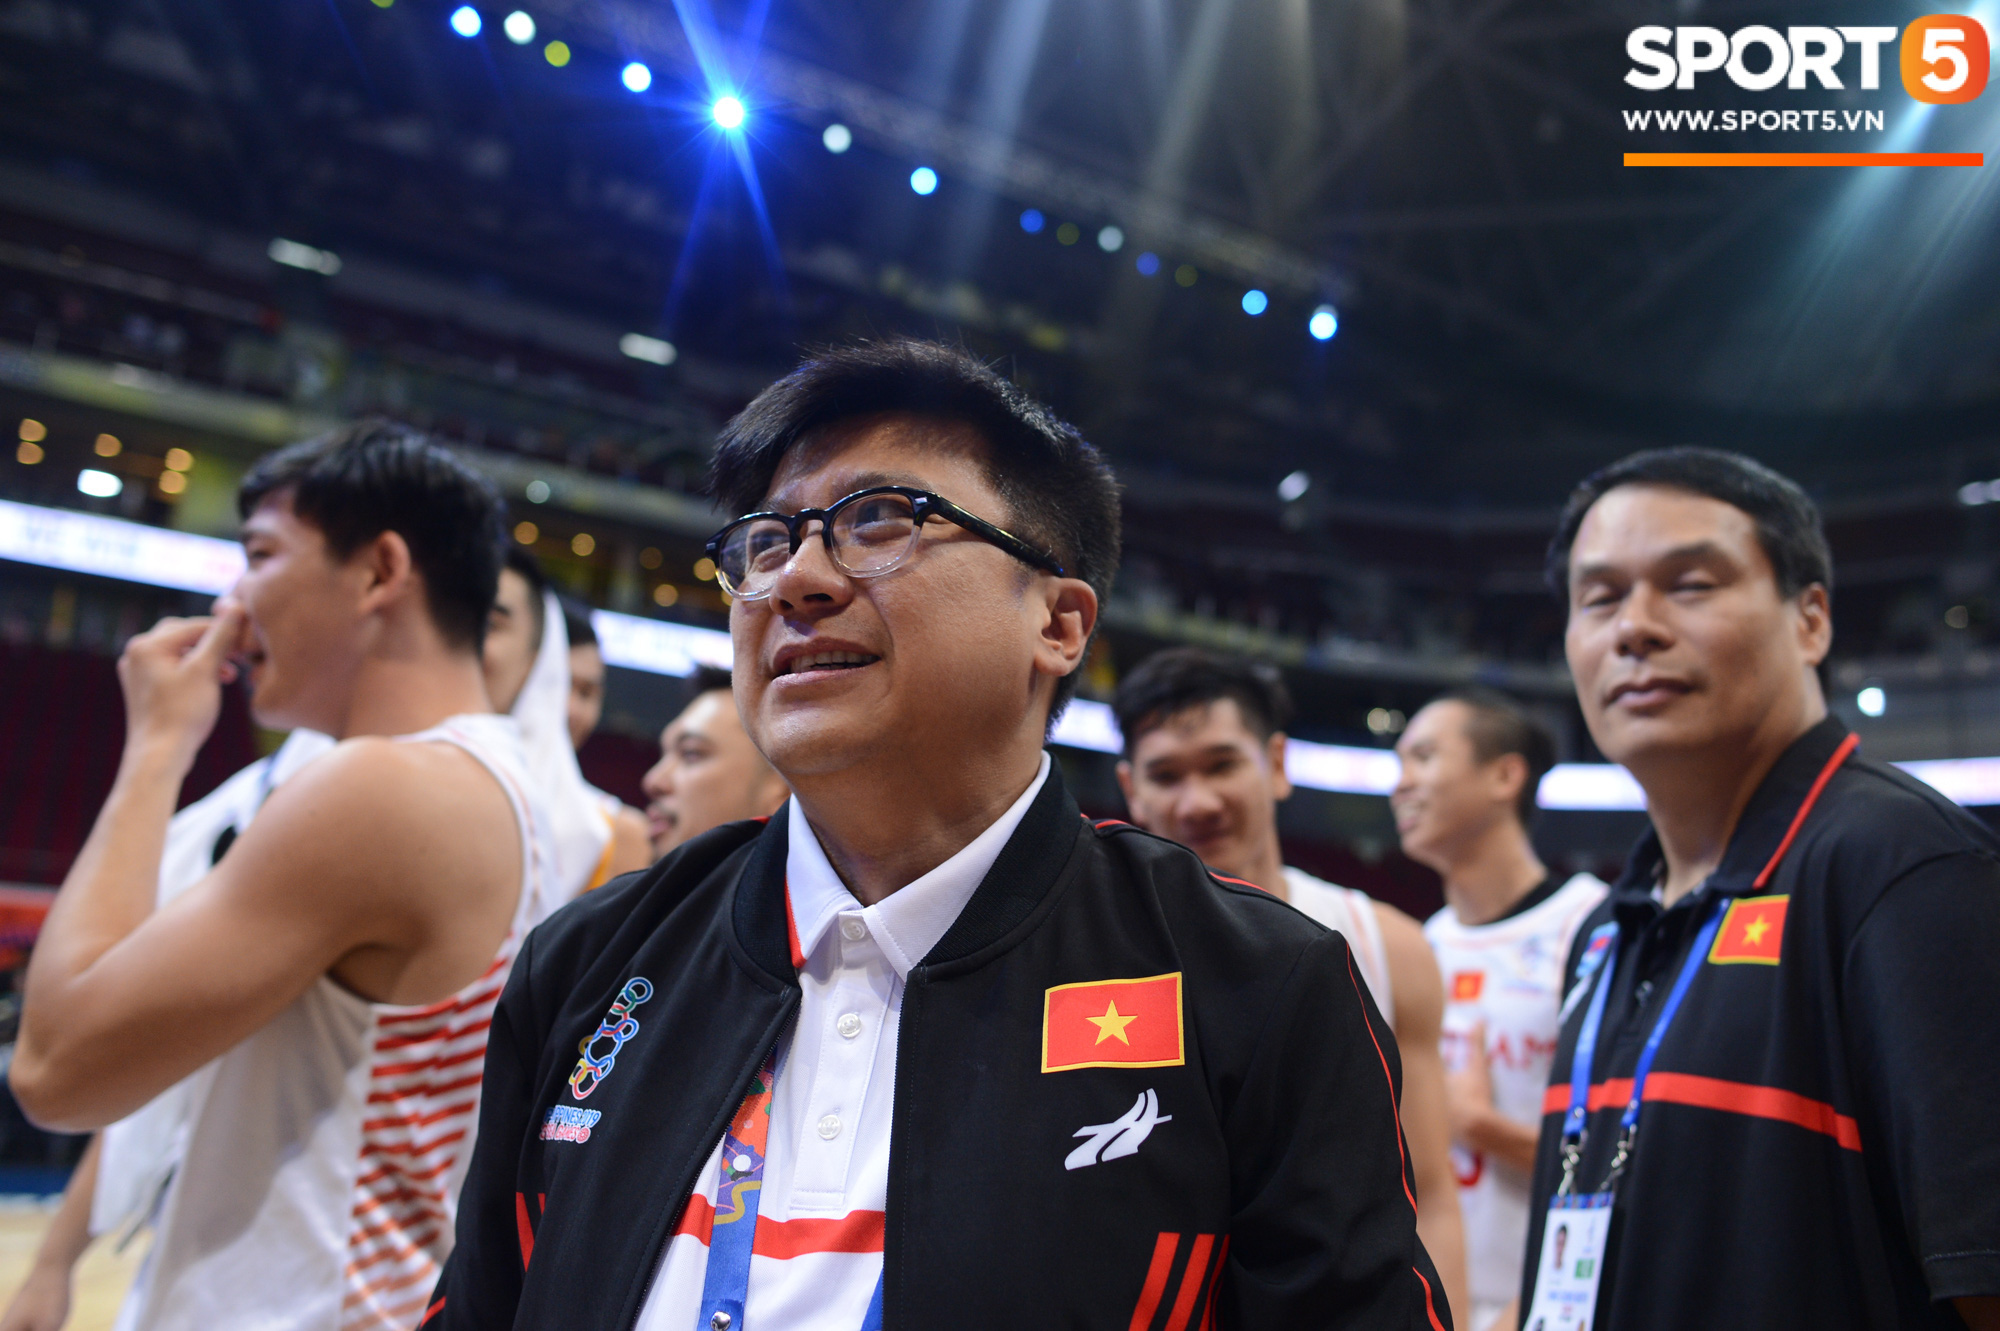 Chùm ảnh: Bật tung cảm xúc khi bóng rổ Việt Nam lần đầu giành tấm huy chương đồng tại SEA Games - Ảnh 7.